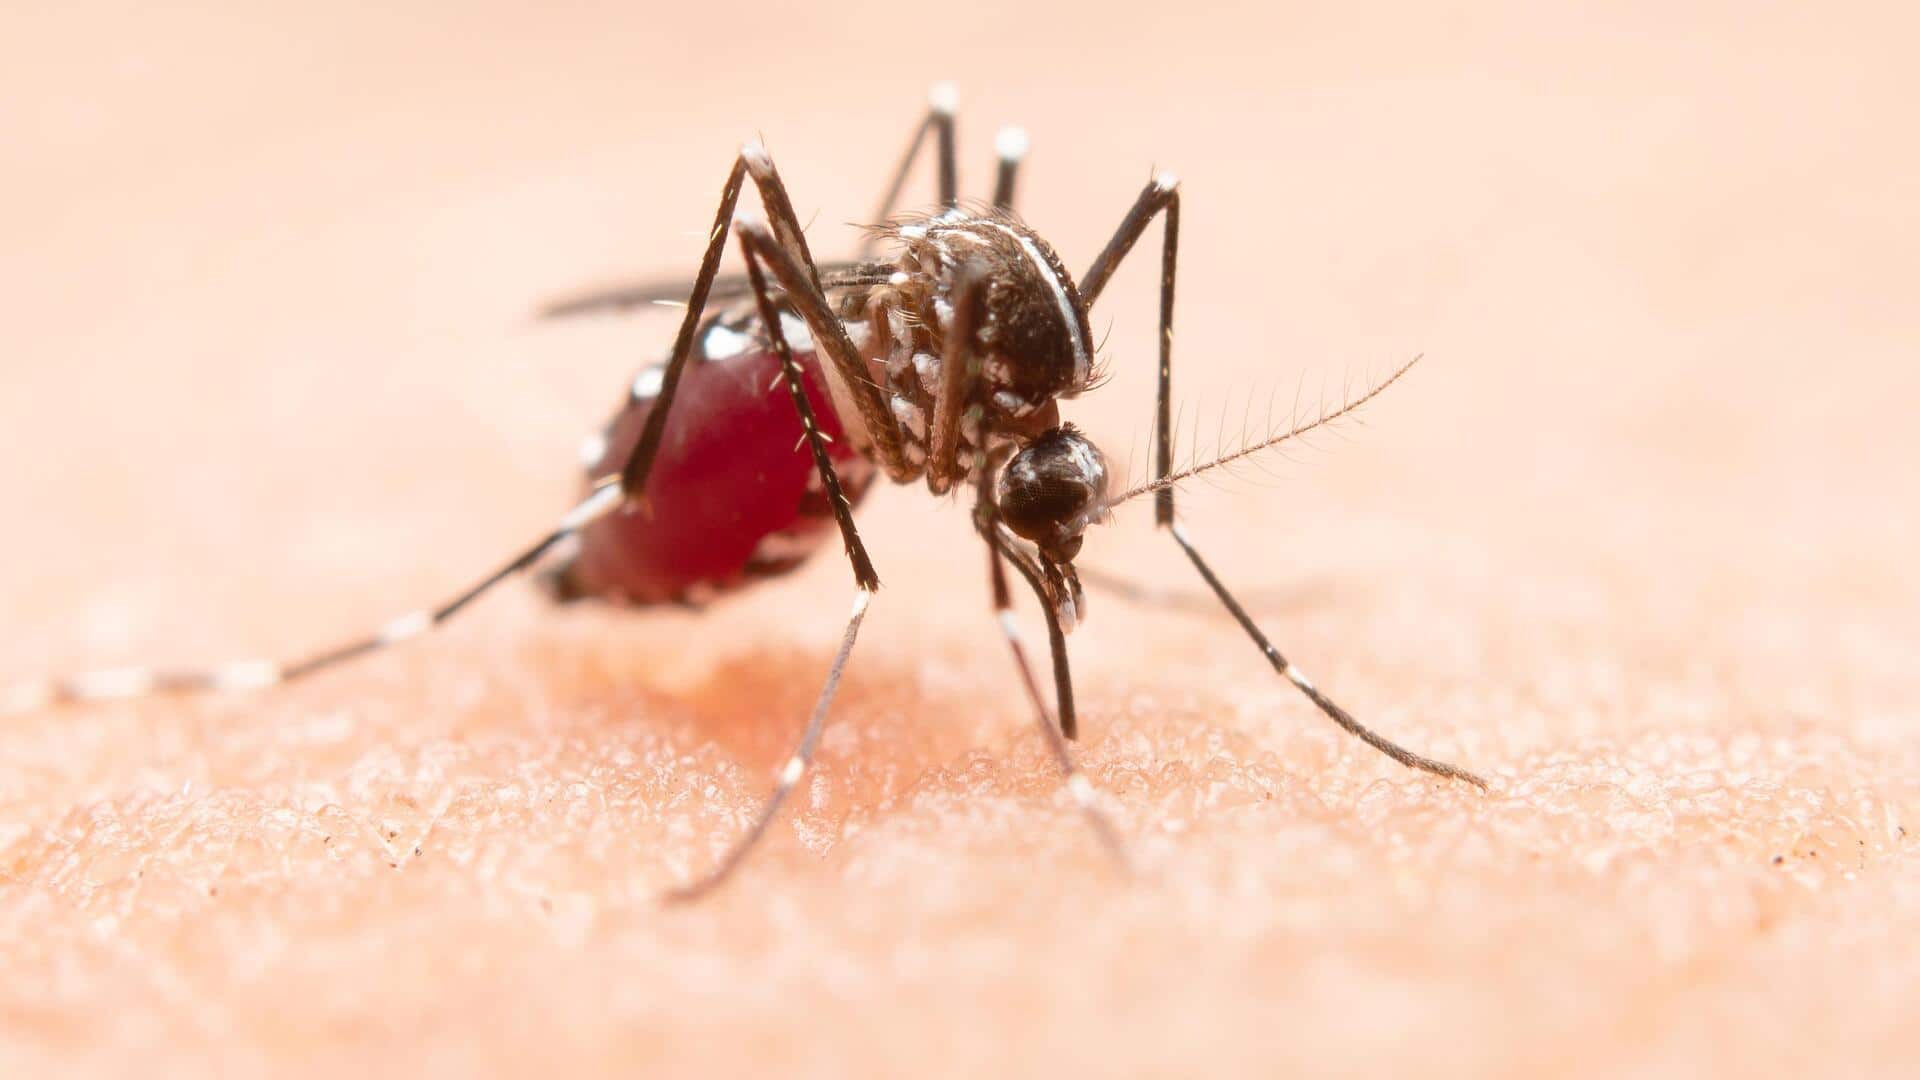 कर्नाटक: चिक्काबल्लापुर में मच्छरों में मिला घातक जीका वायरस, स्वास्थ्य विभाग अलर्ट